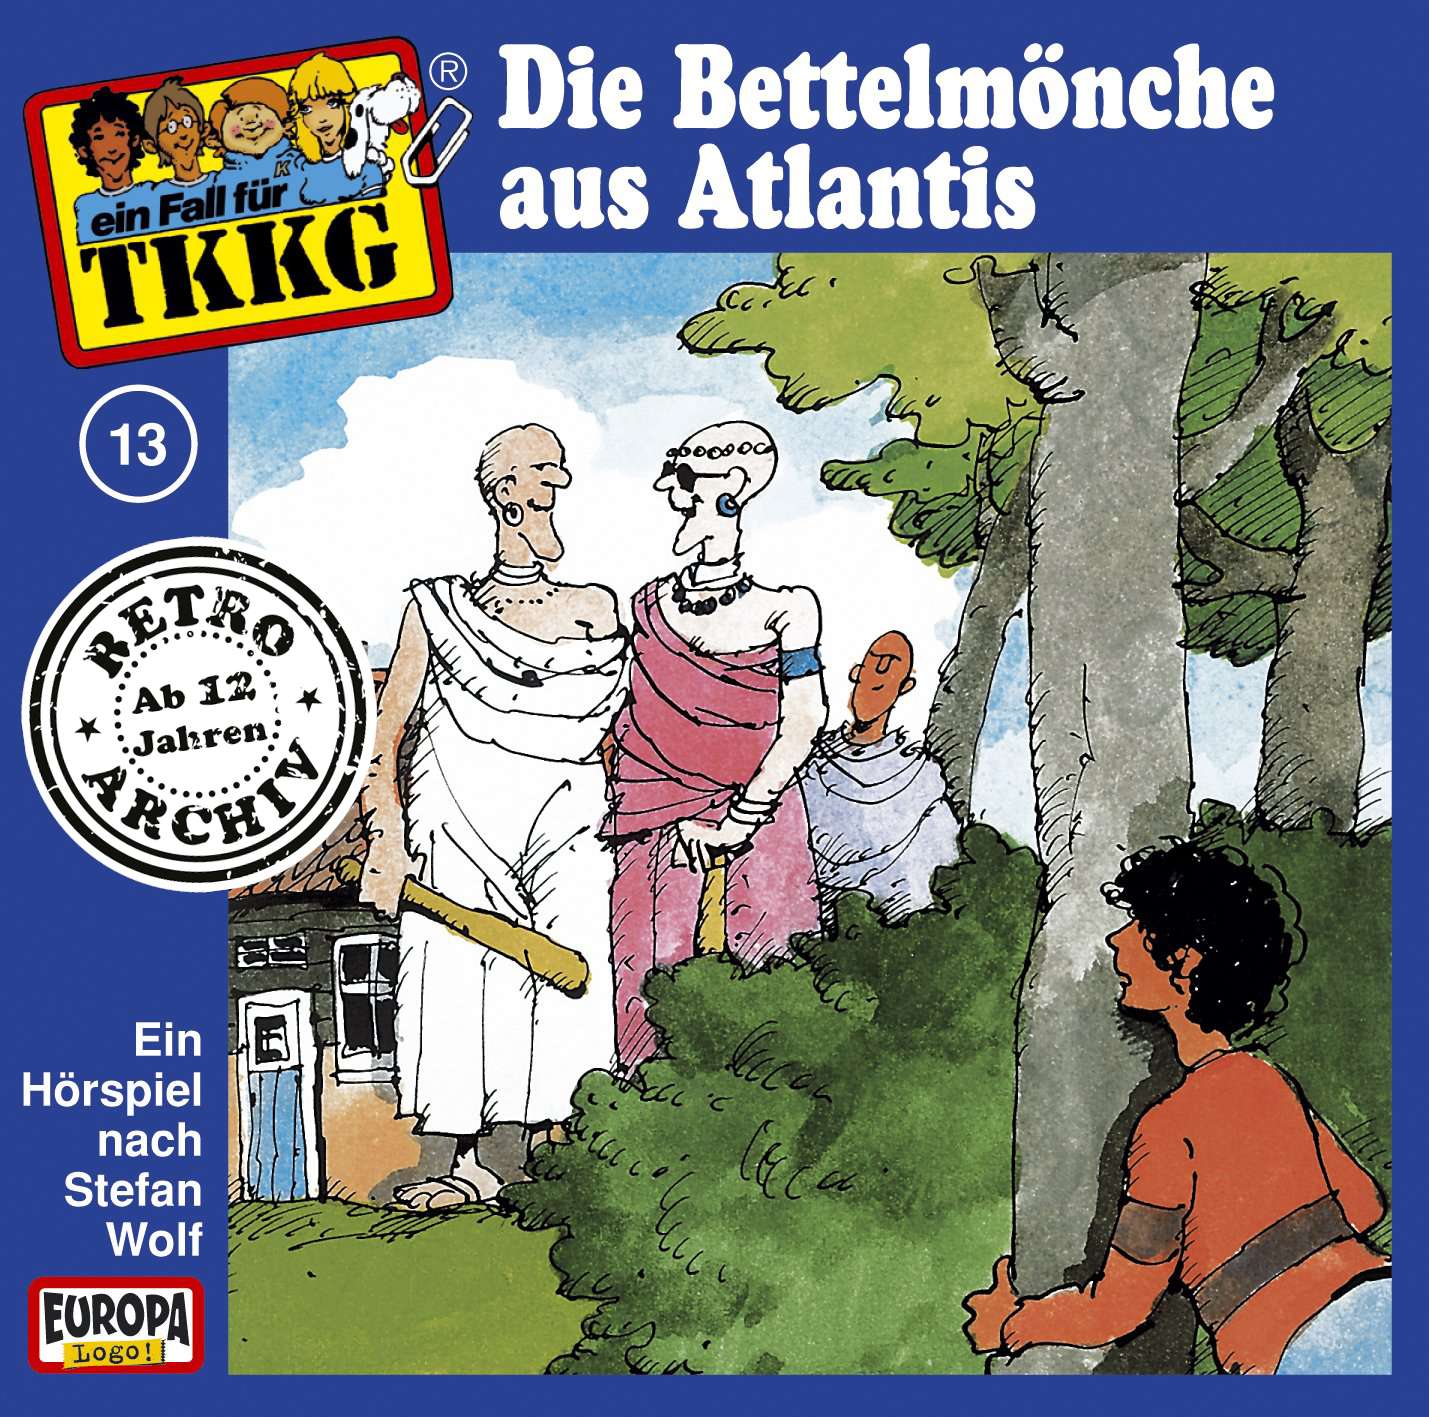 TKKG Retro-Archiv: Die Bettelmönche von Atlantis